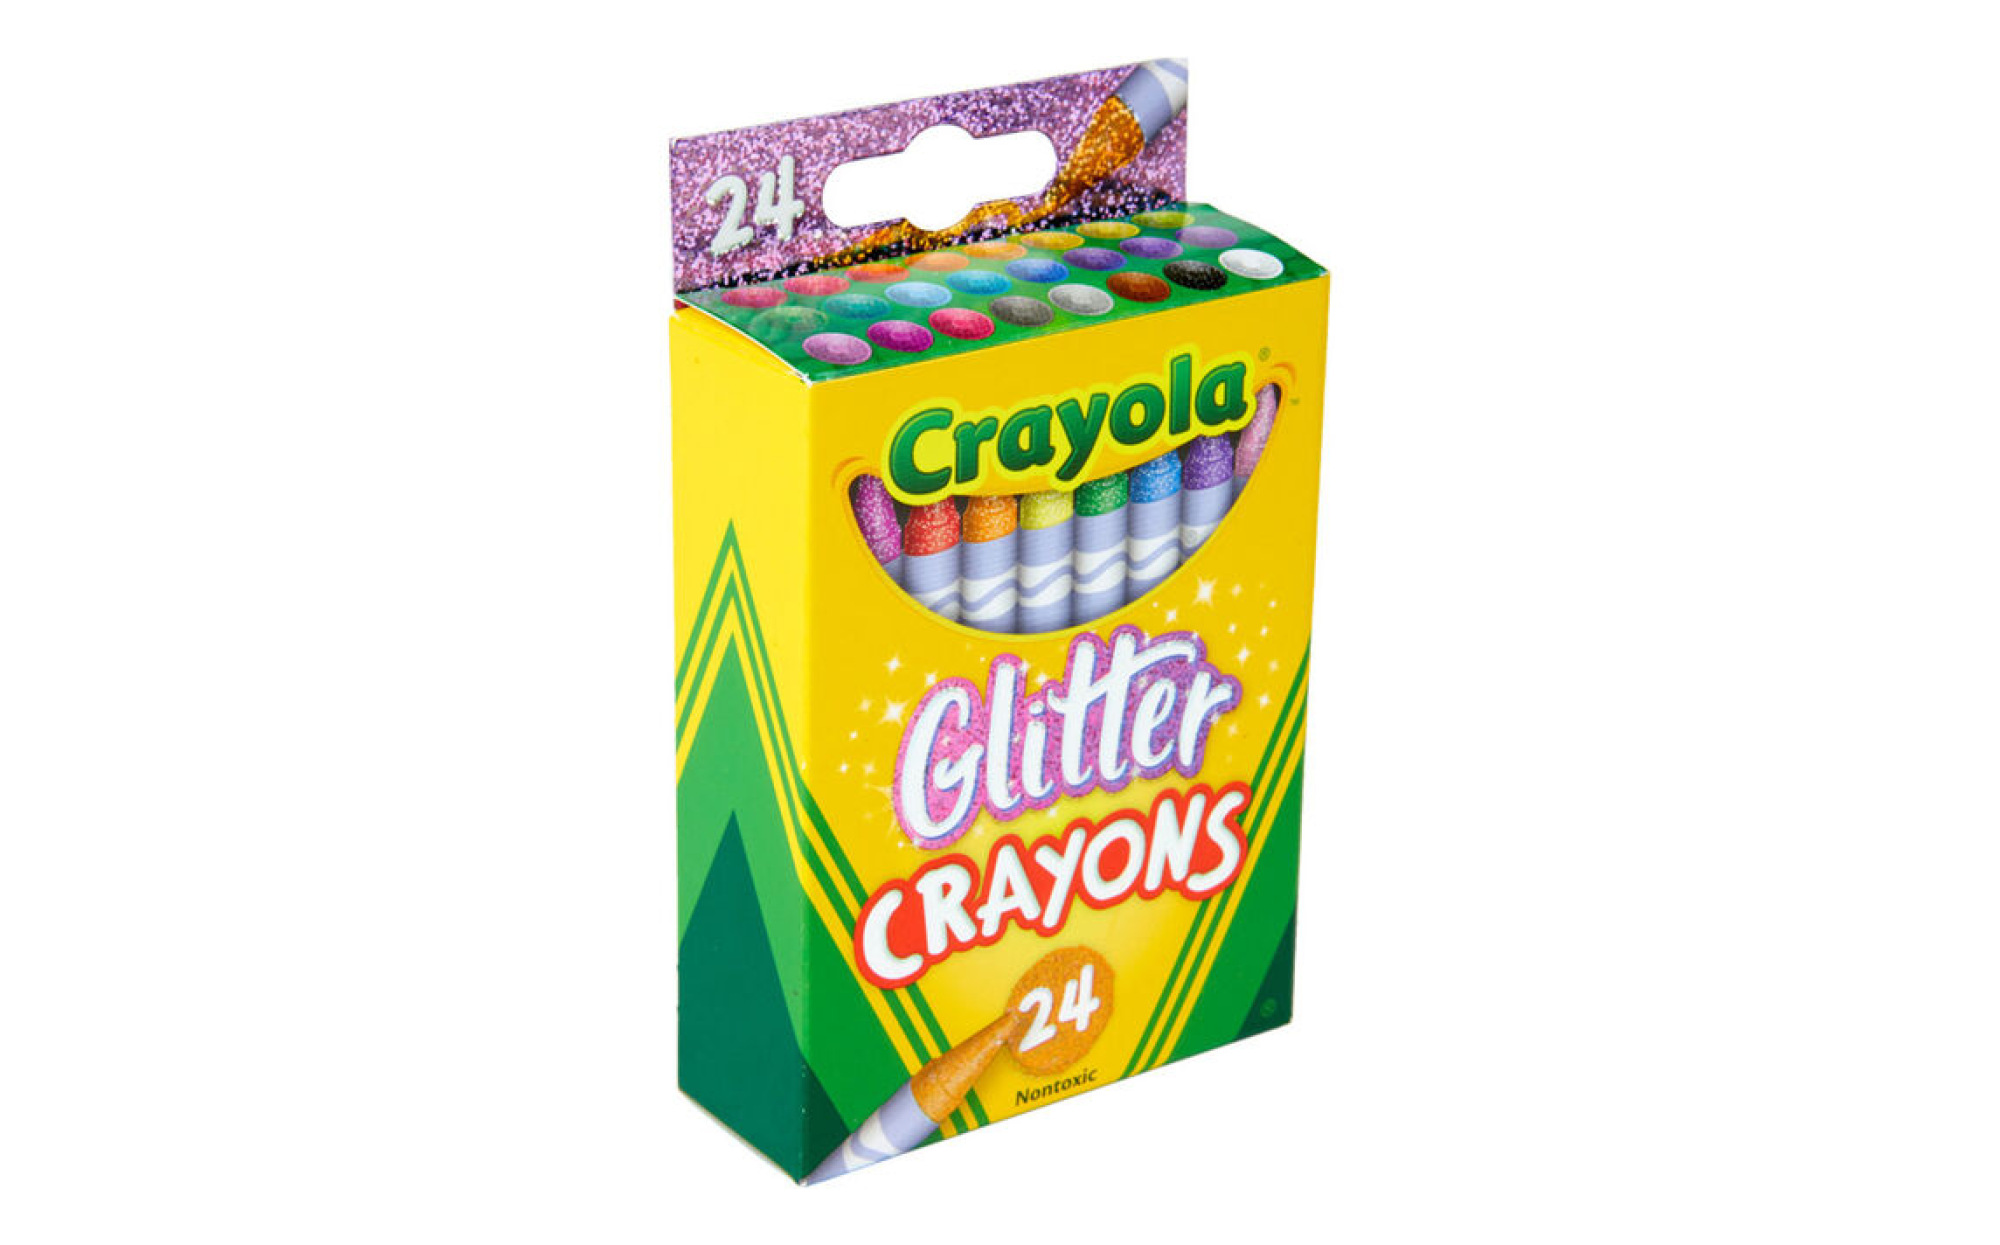 Glitter Crayons, 24 Count Crayola Crayons, Crayola.com